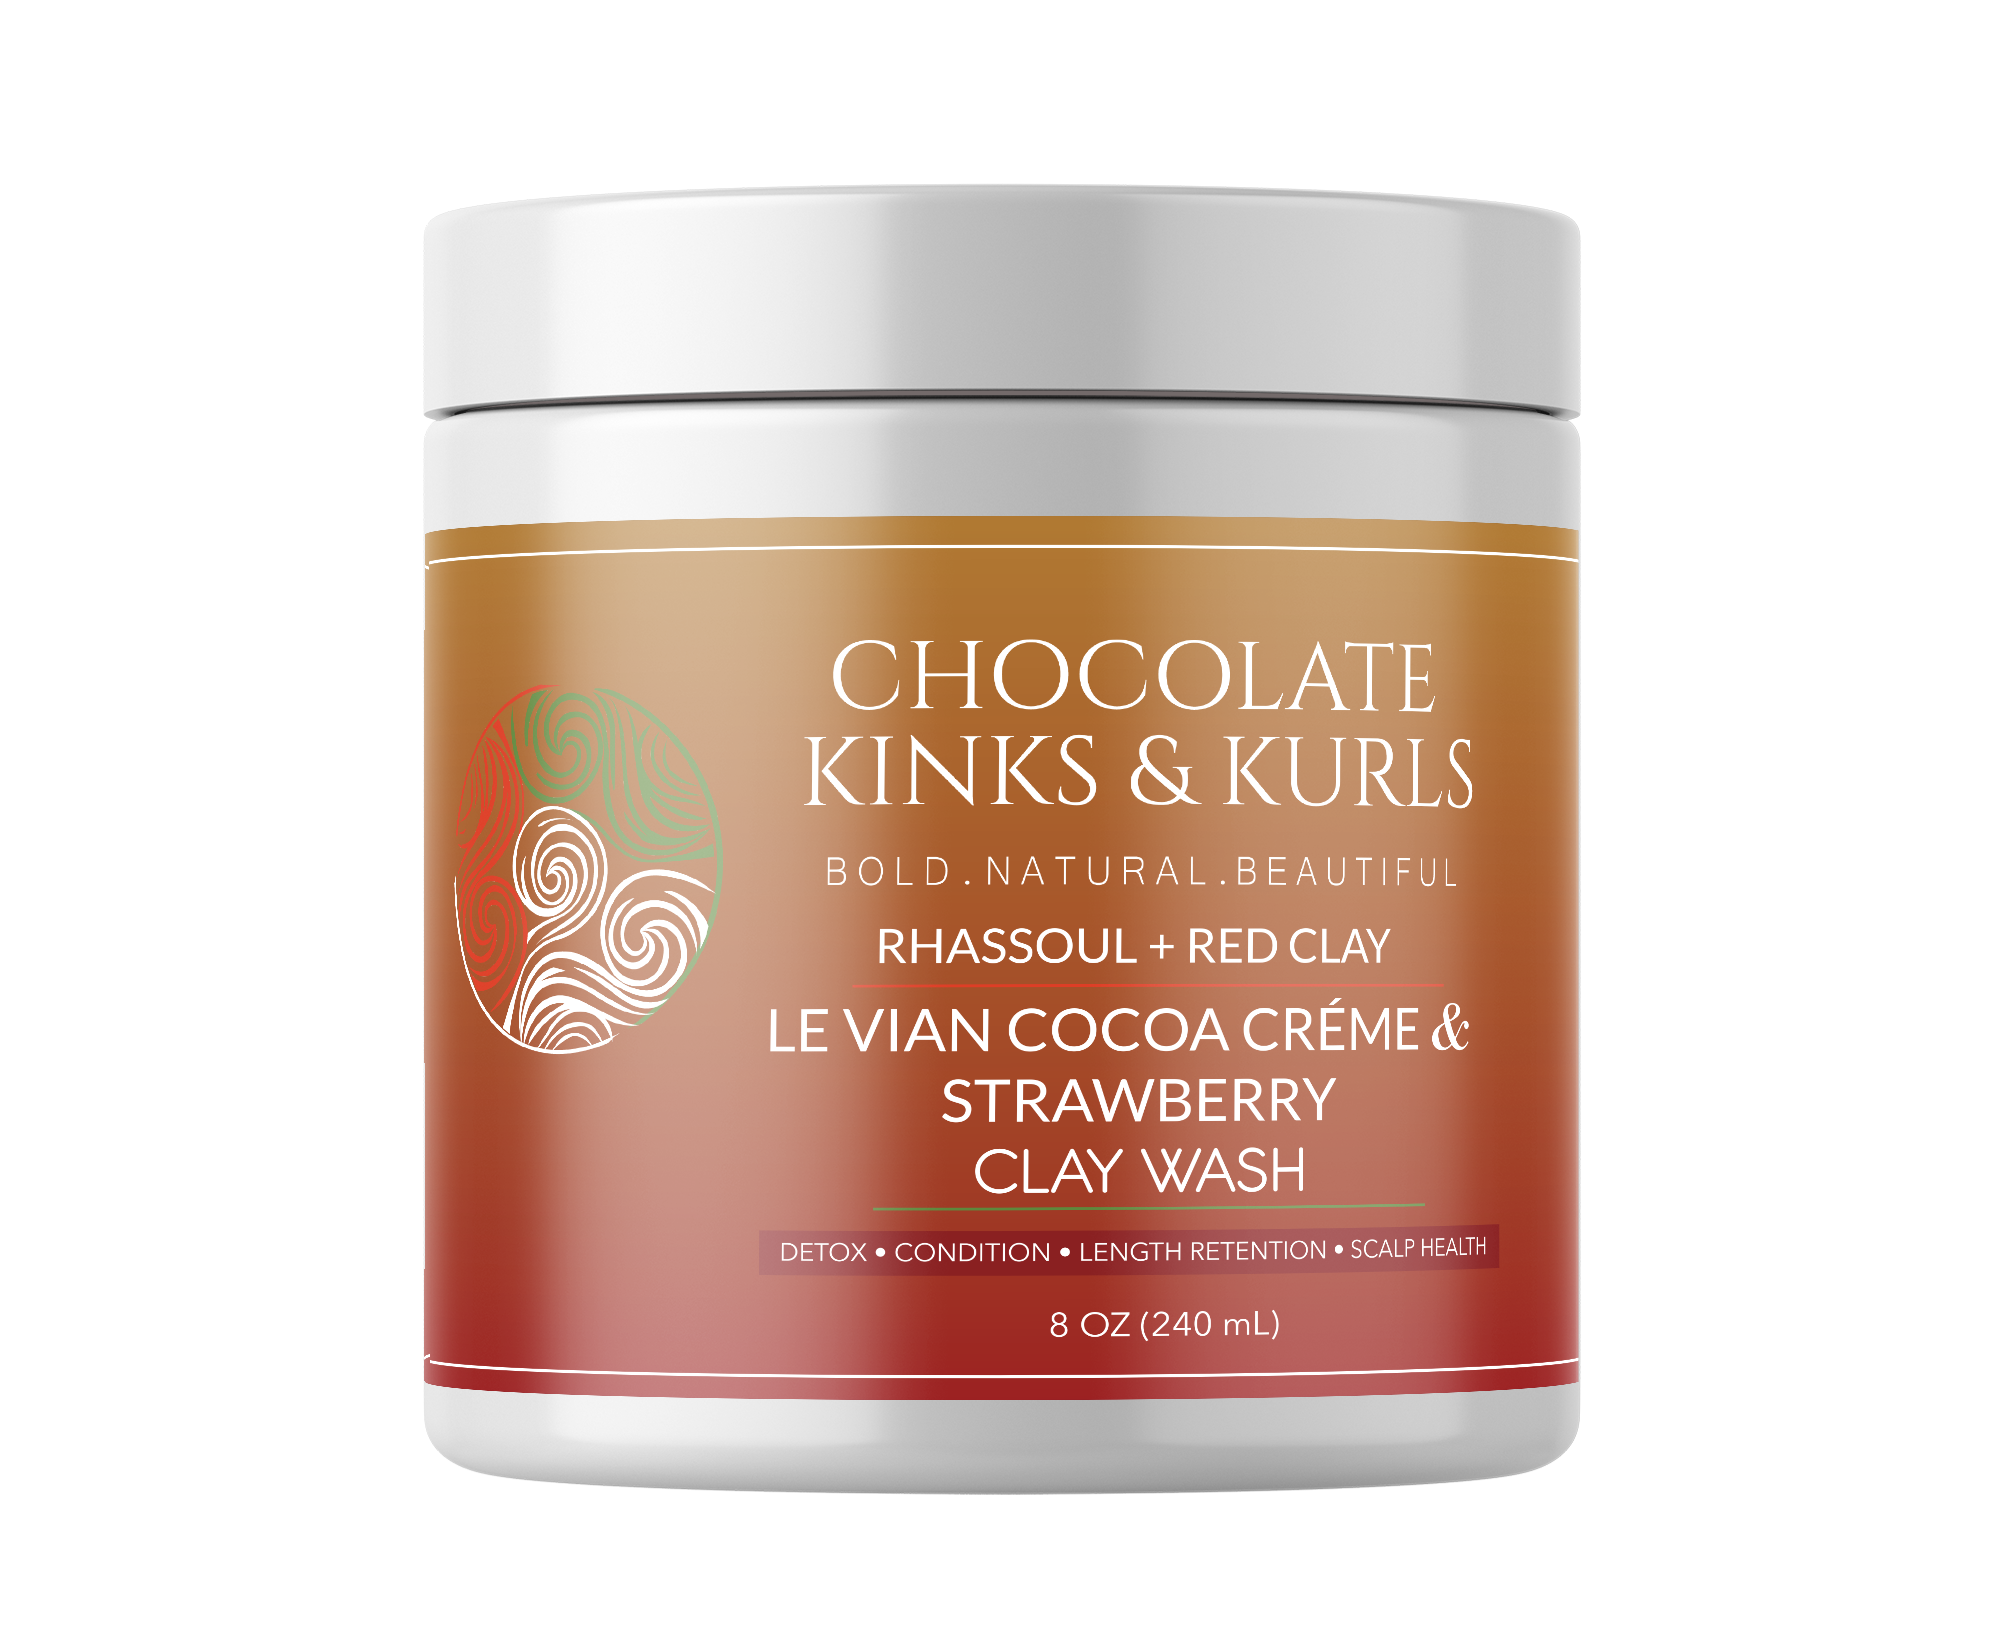 Le Vian Cocoa Crème & Strawberry Clay Wash